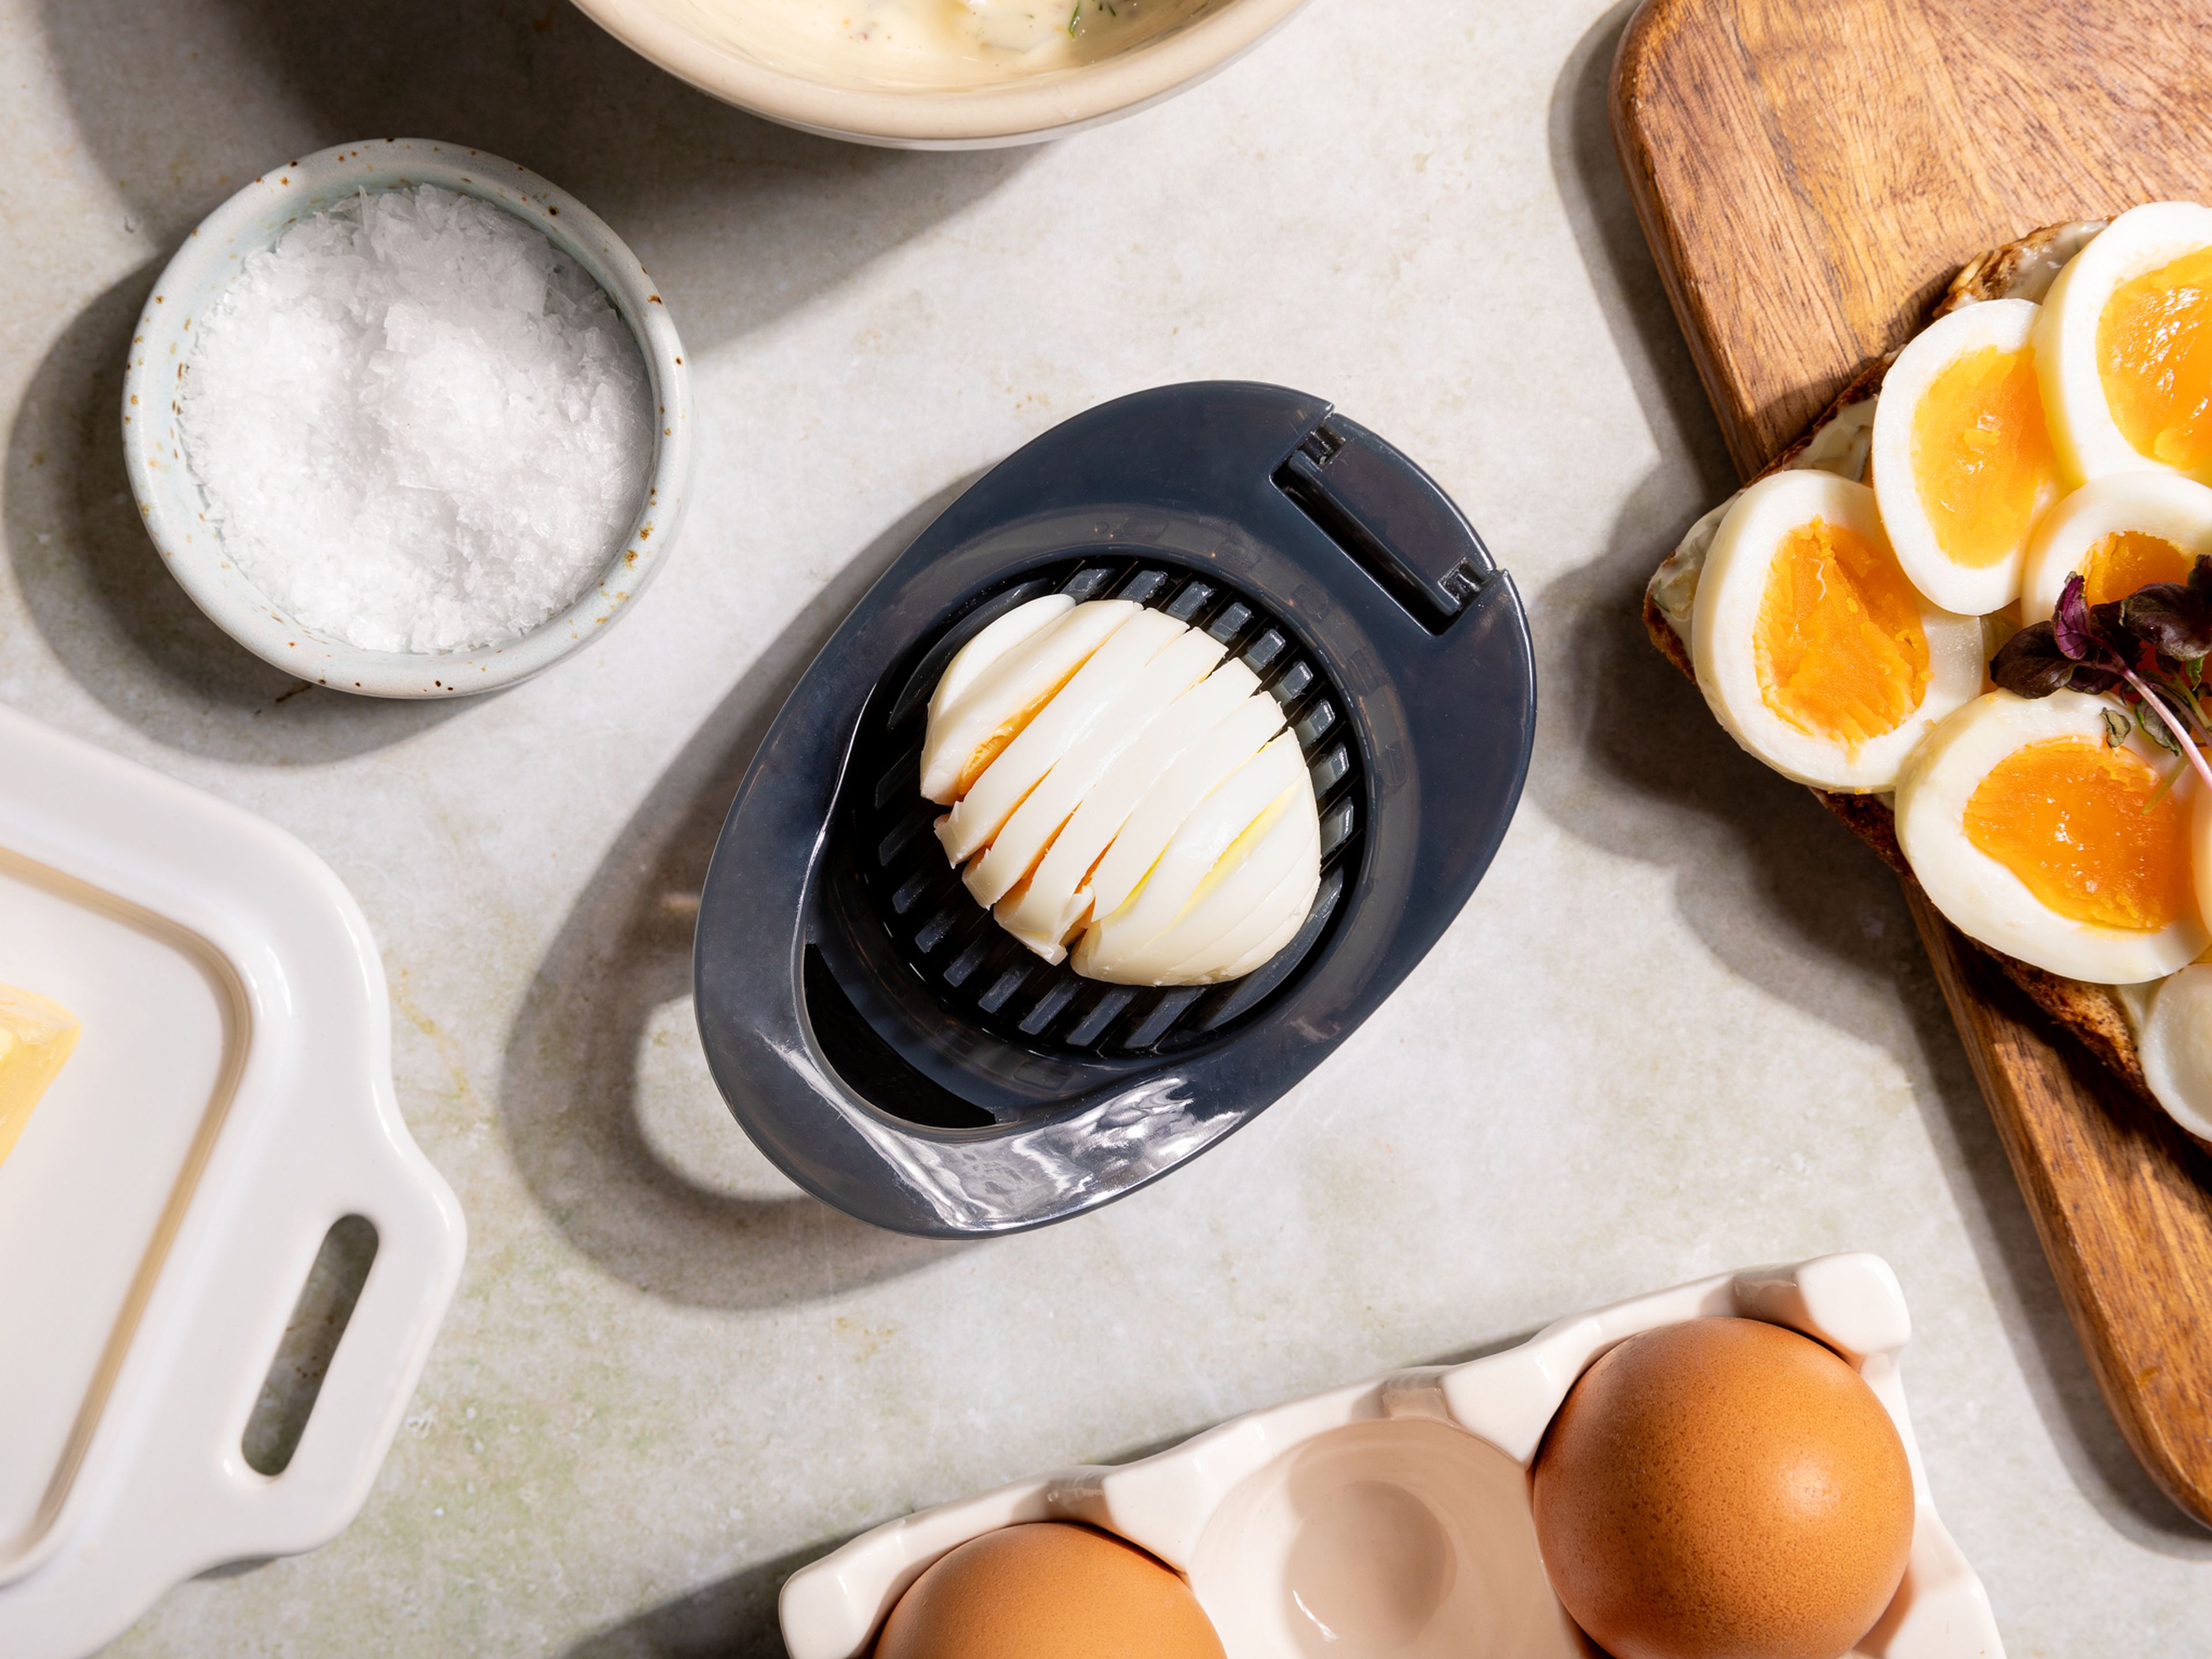 Mit diesen 6 günstigen Eier-Gadgets meisterst du jede Eierspeise